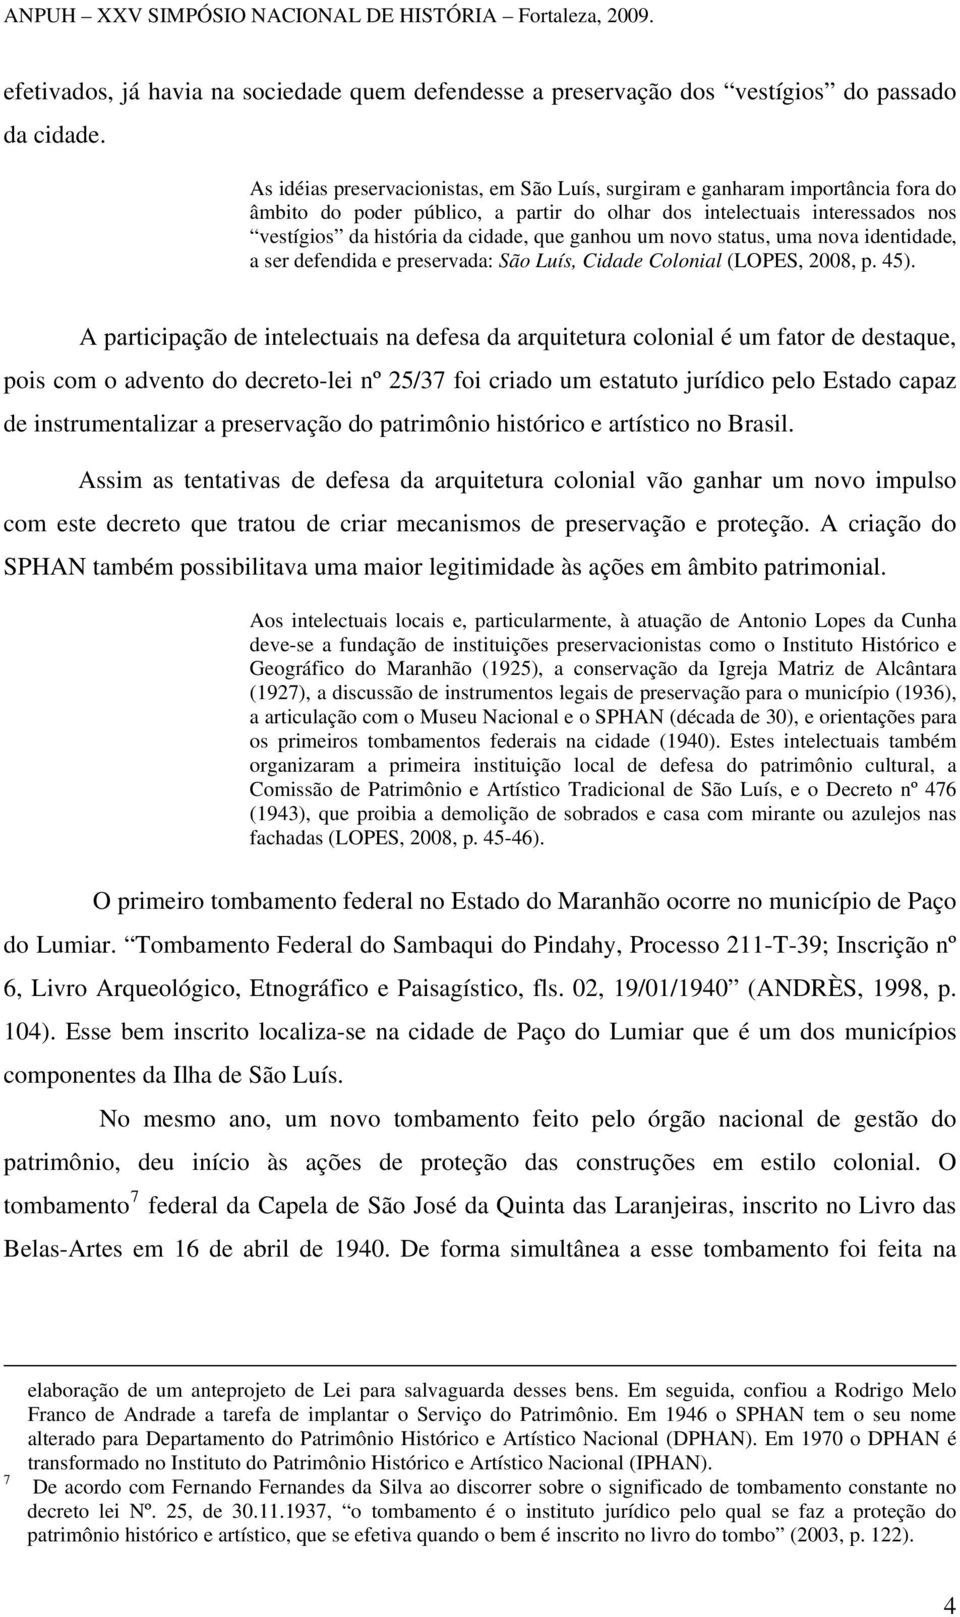 ganhou um novo status, uma nova identidade, a ser defendida e preservada: São Luís, Cidade Colonial (LOPES, 2008, p. 45).